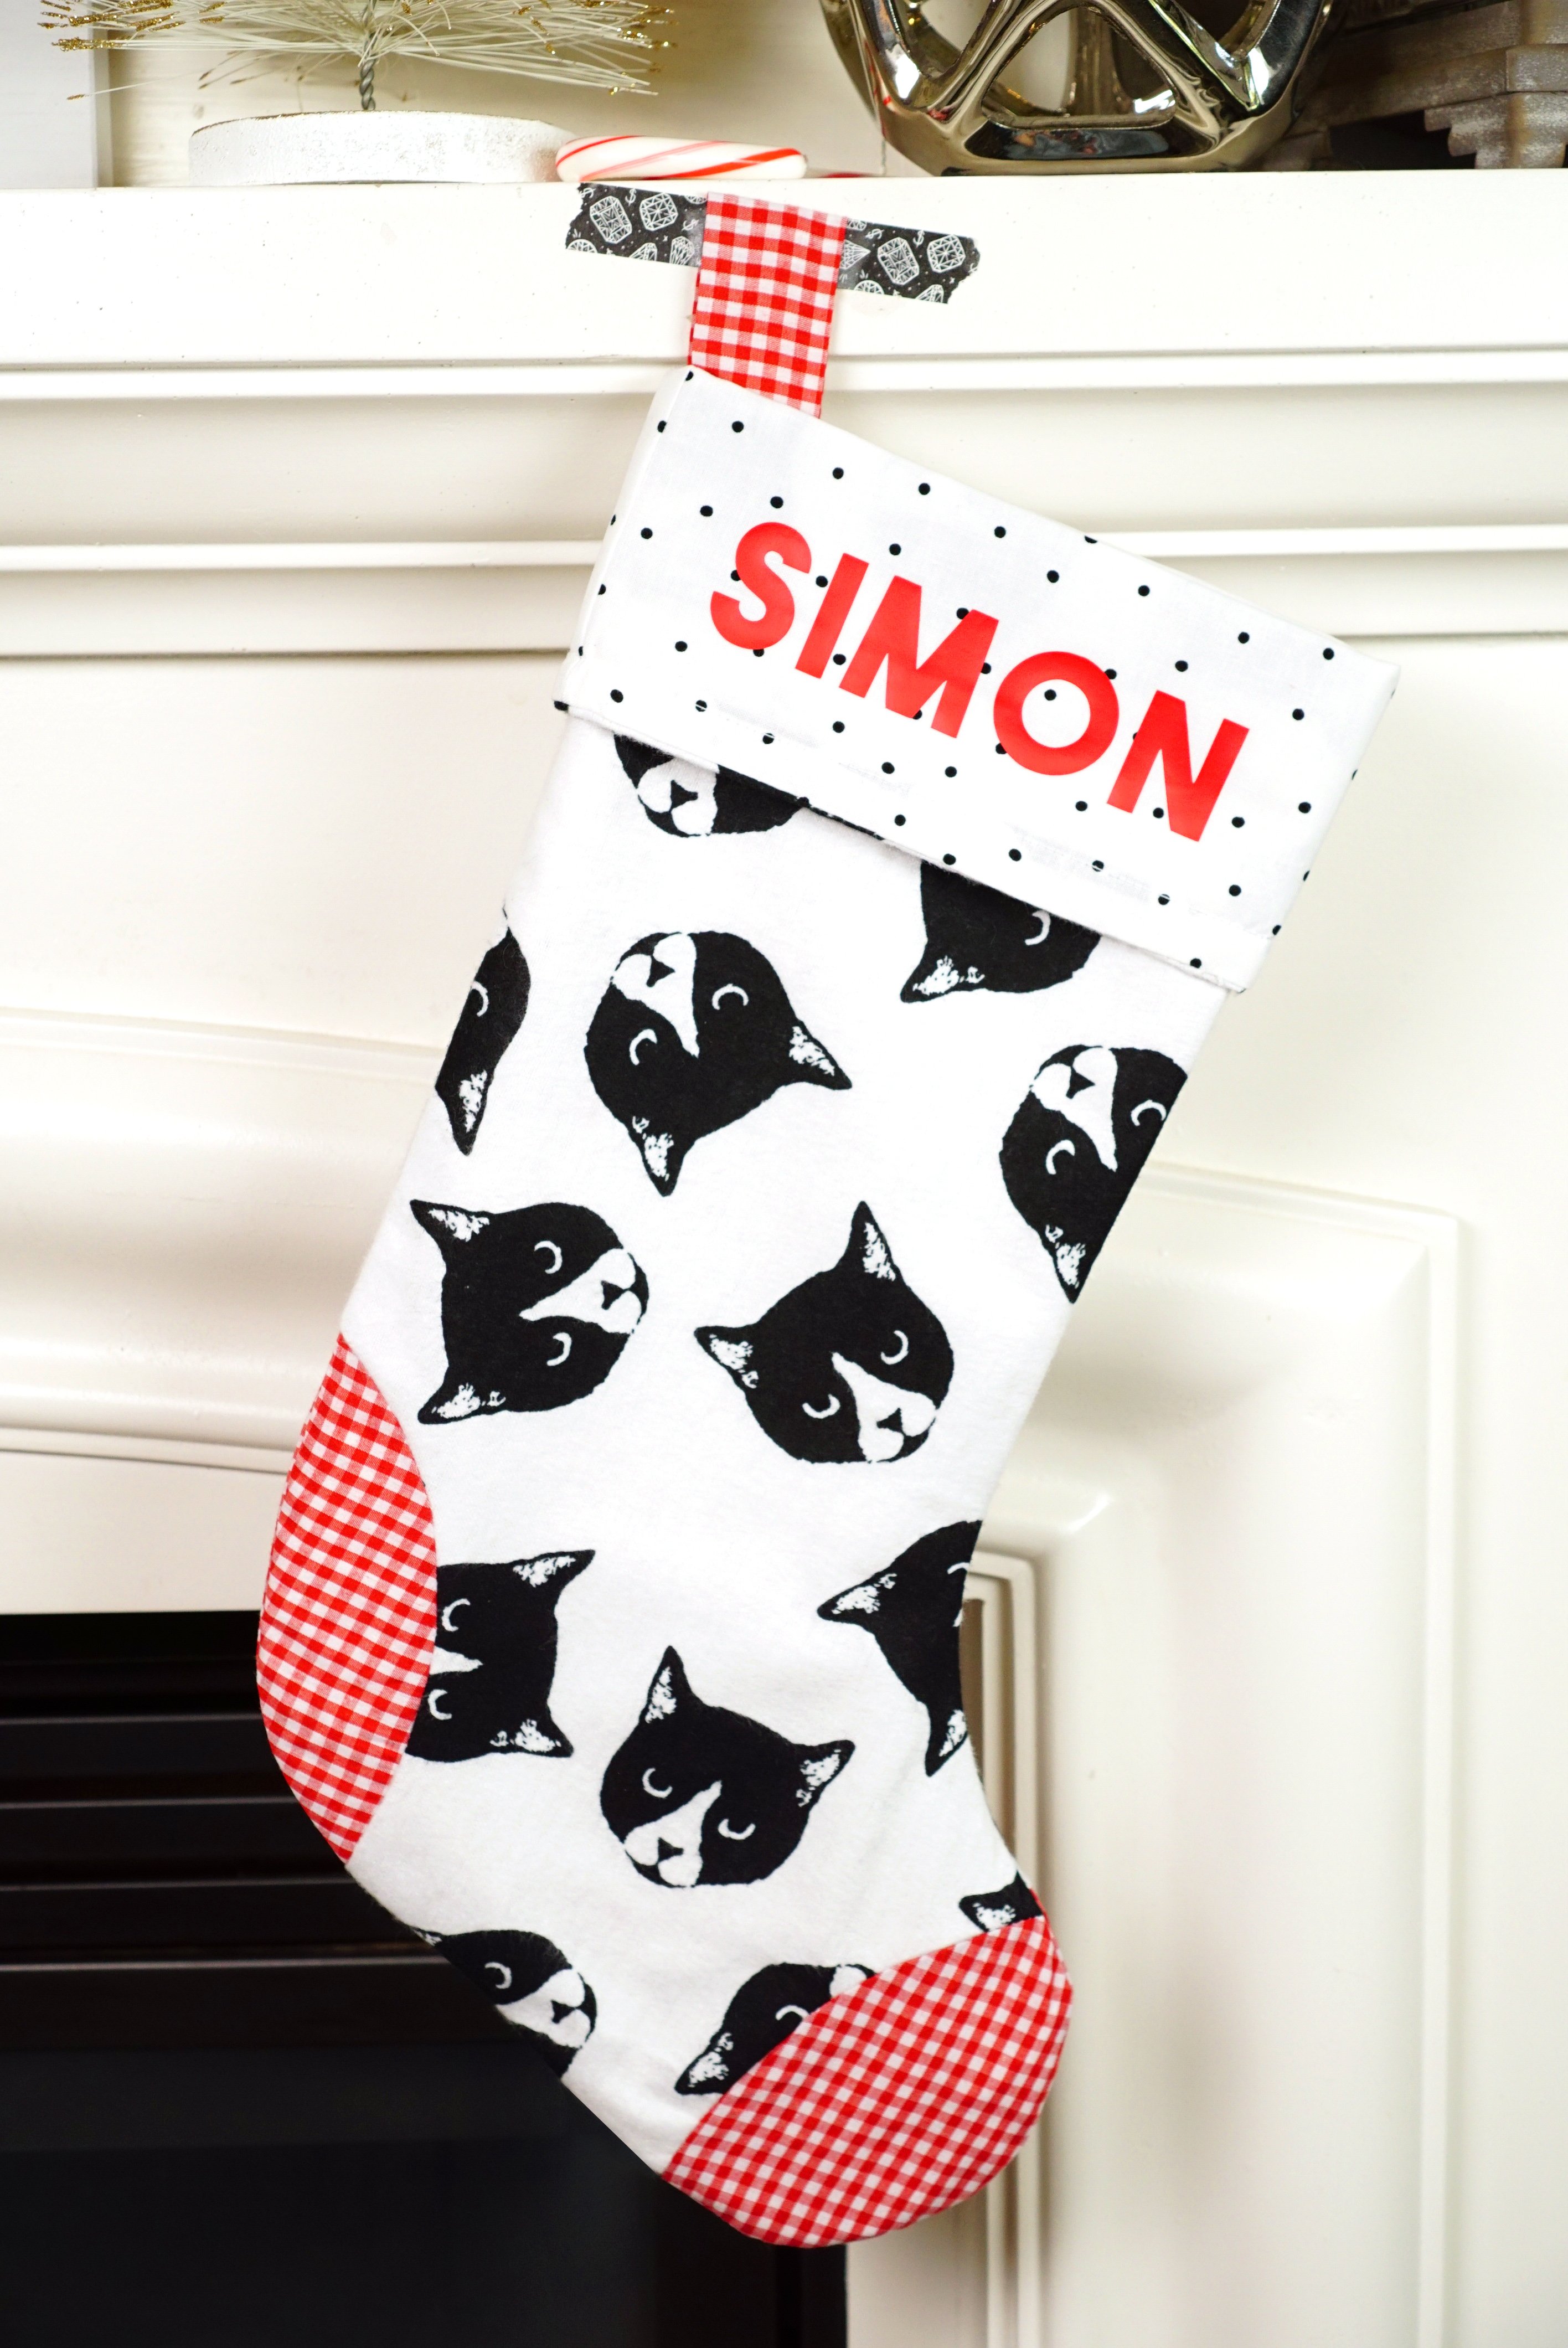 simon name on stocking with black and white kitty faces